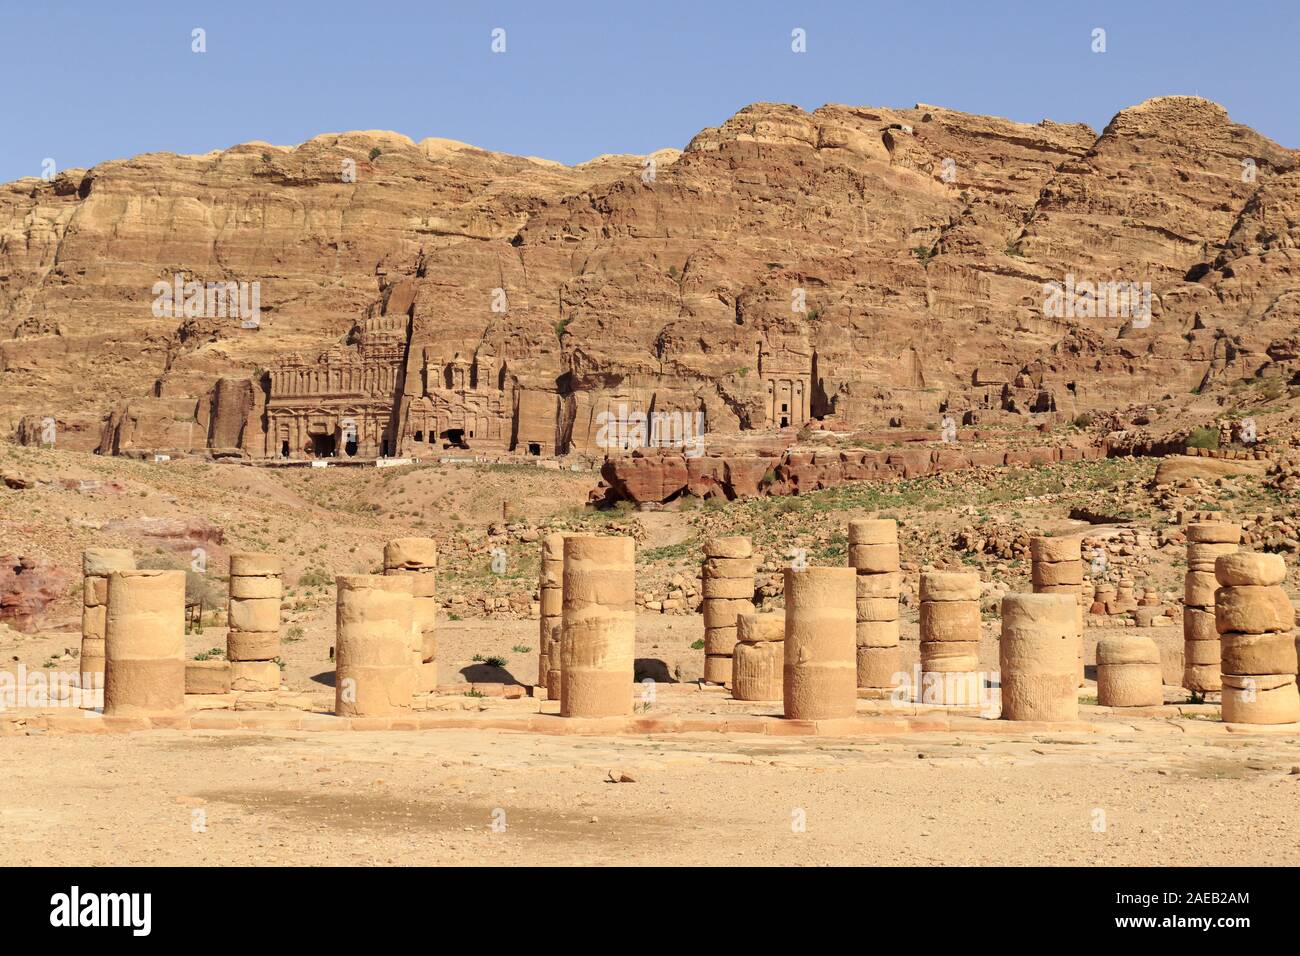 City of Petra in Jordan Stock Photo